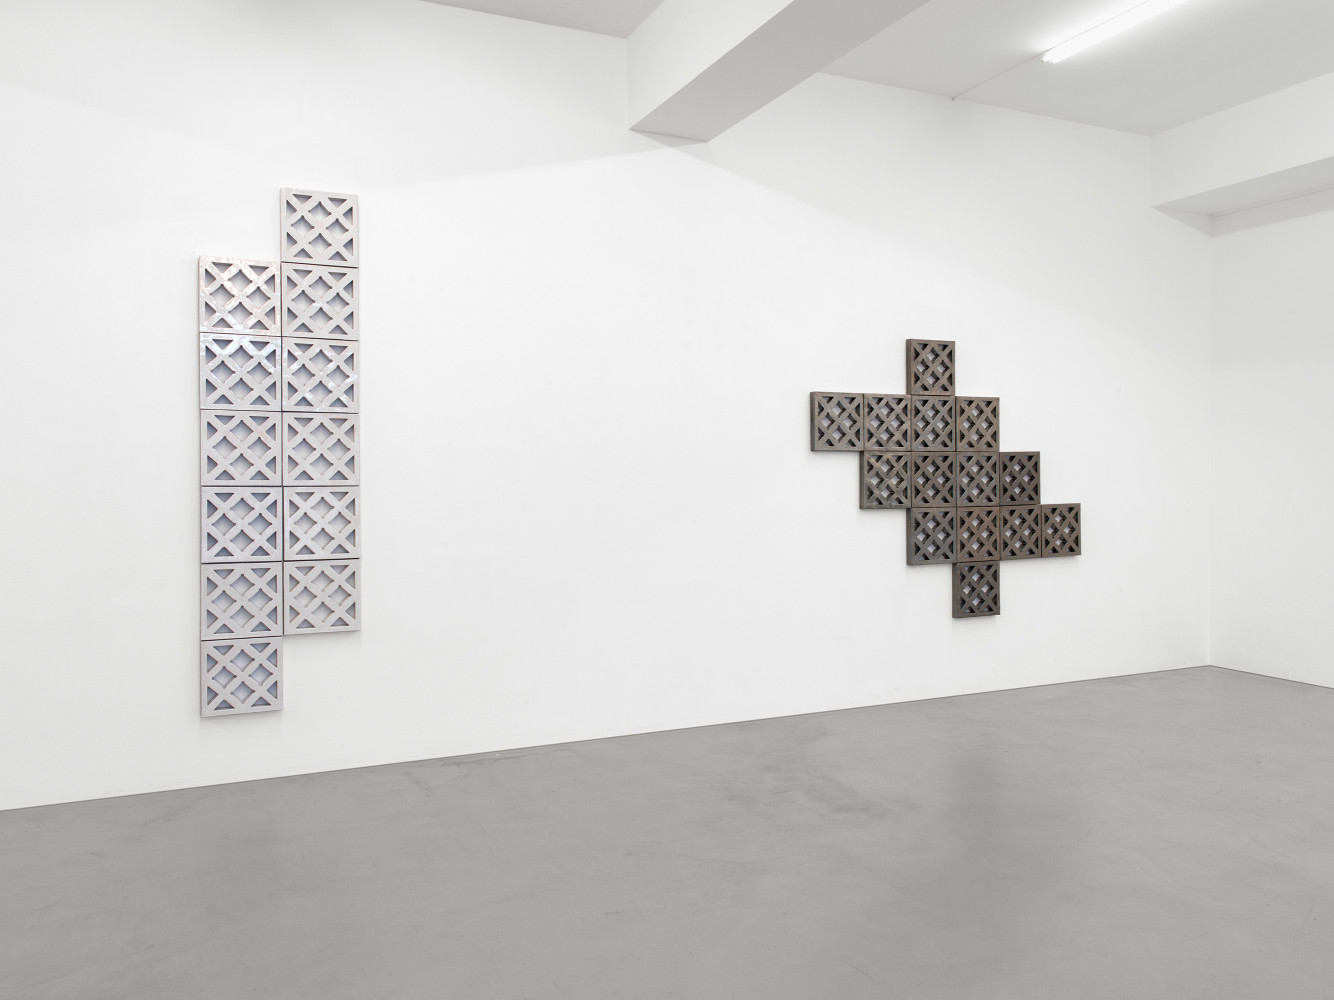 Bettina Pousttchi, Installationsansicht, Buchmann Galerie, 2016